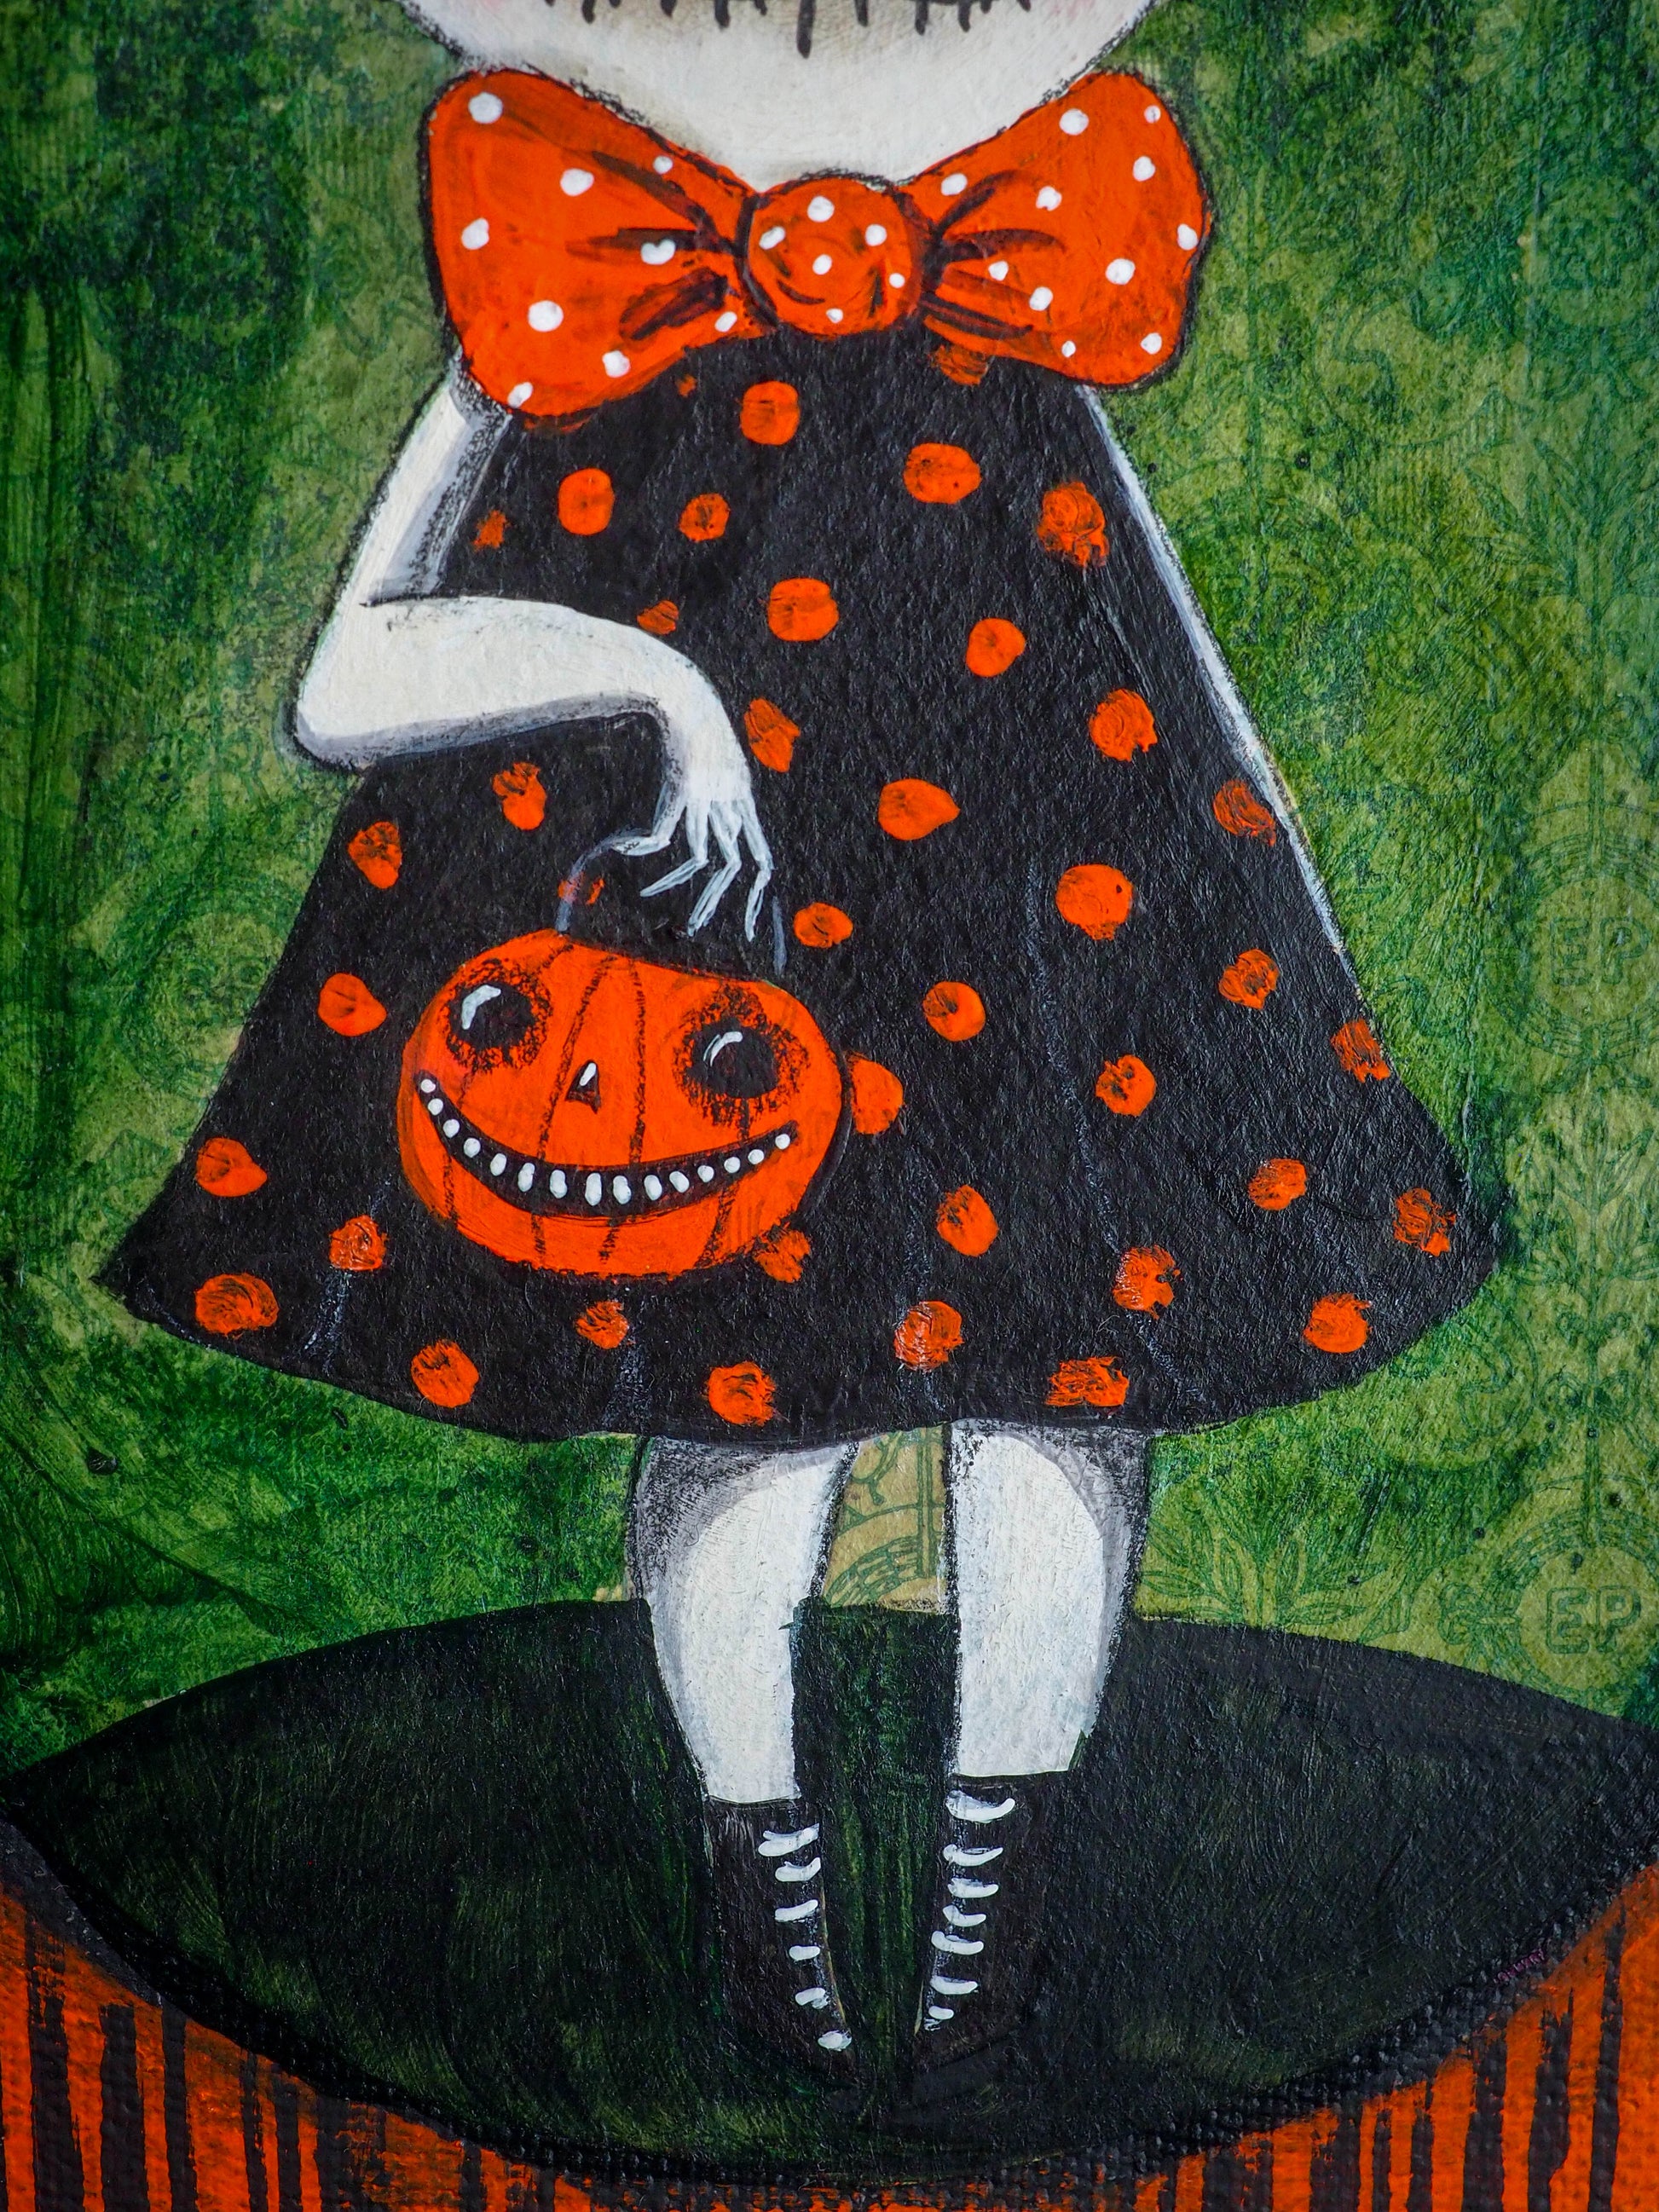 GHOUL GIRL - Halloween art painting by Danita Art, Original Art by Danita Art